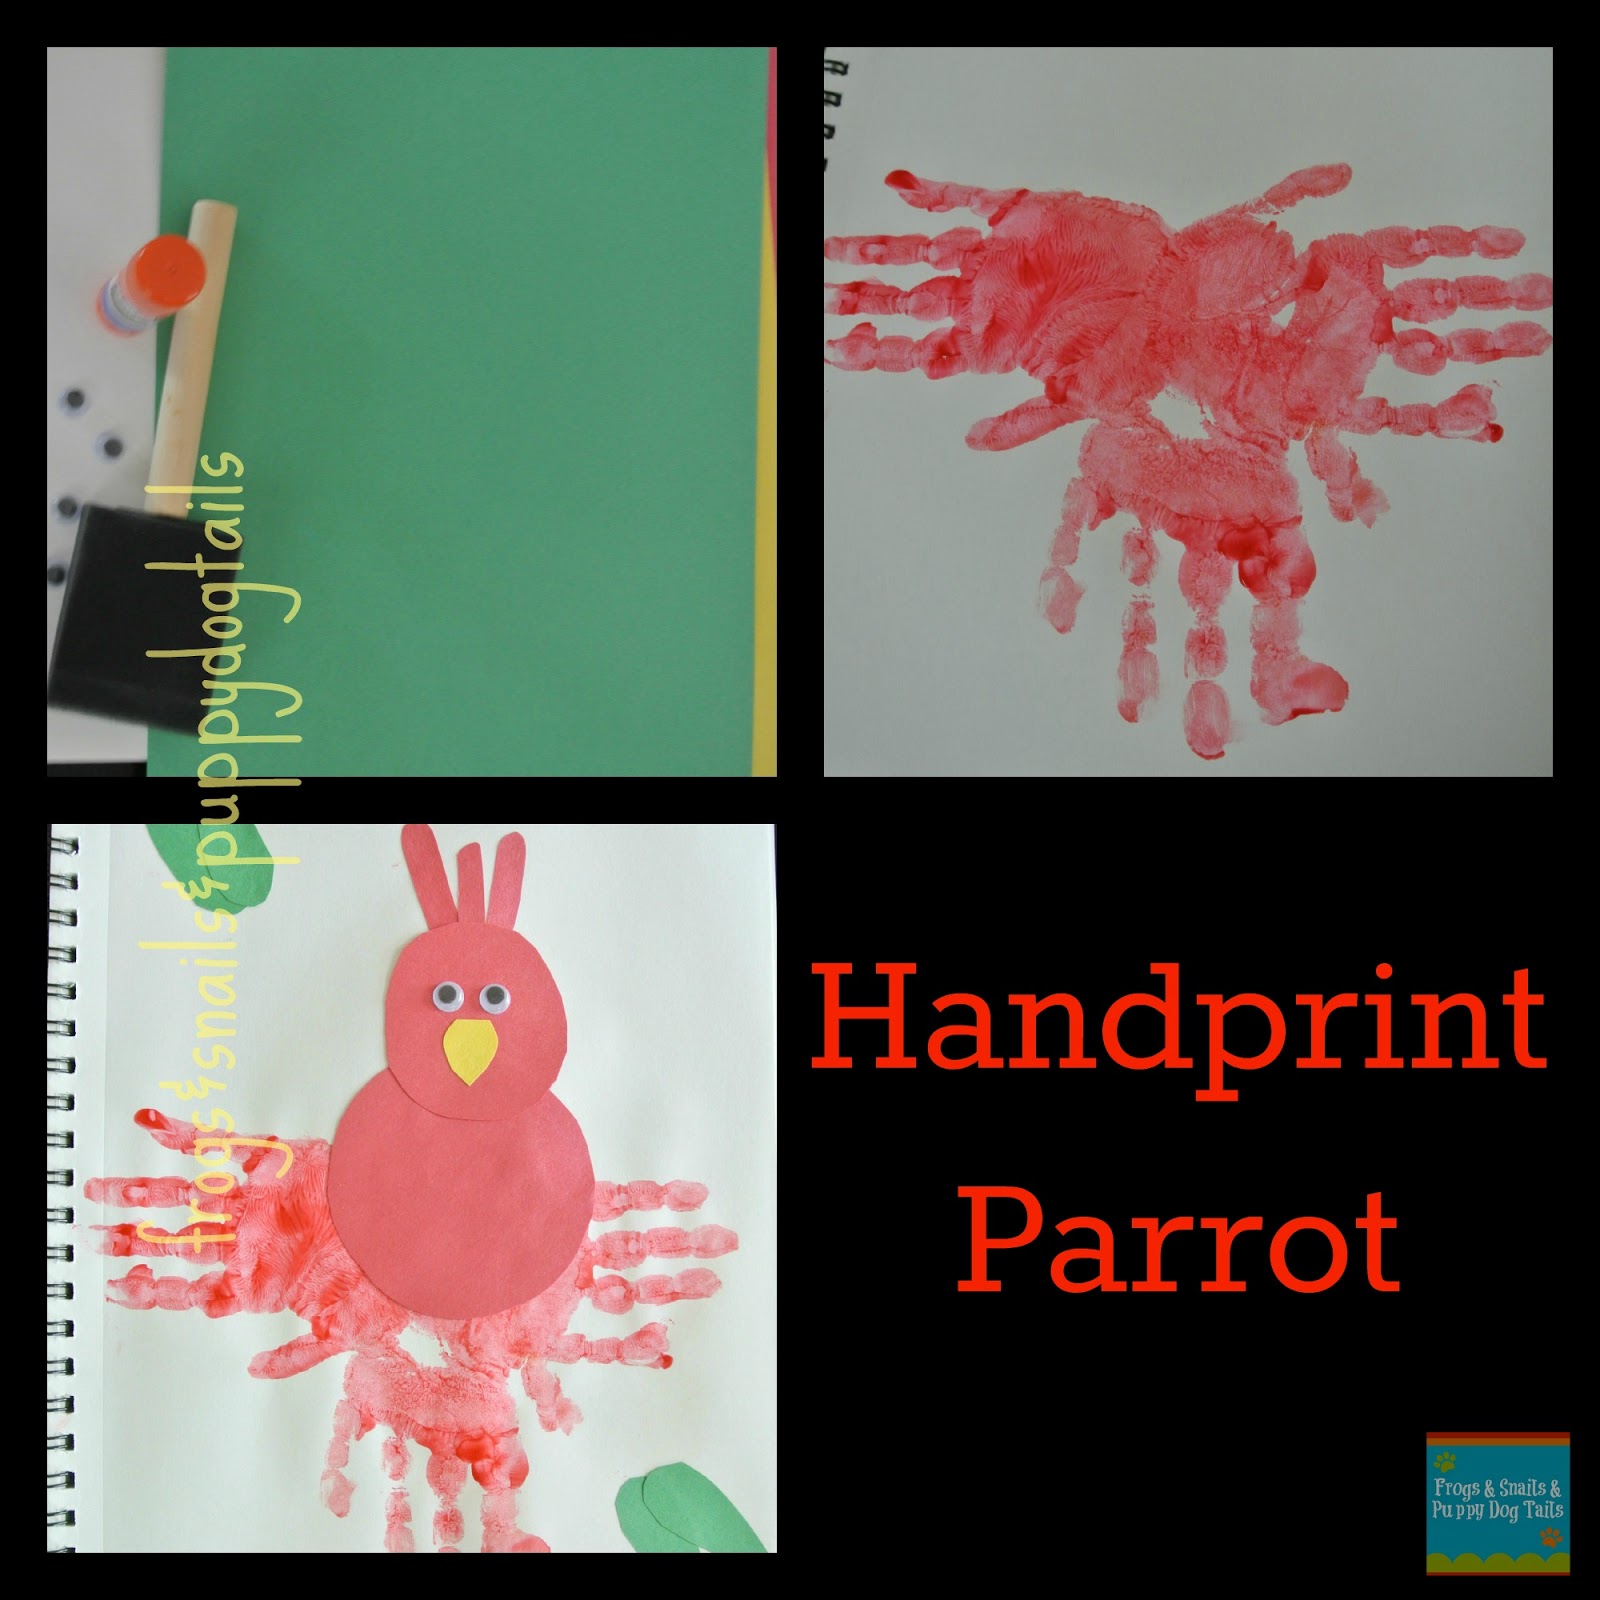 Handprint Parrot #summerofjoann